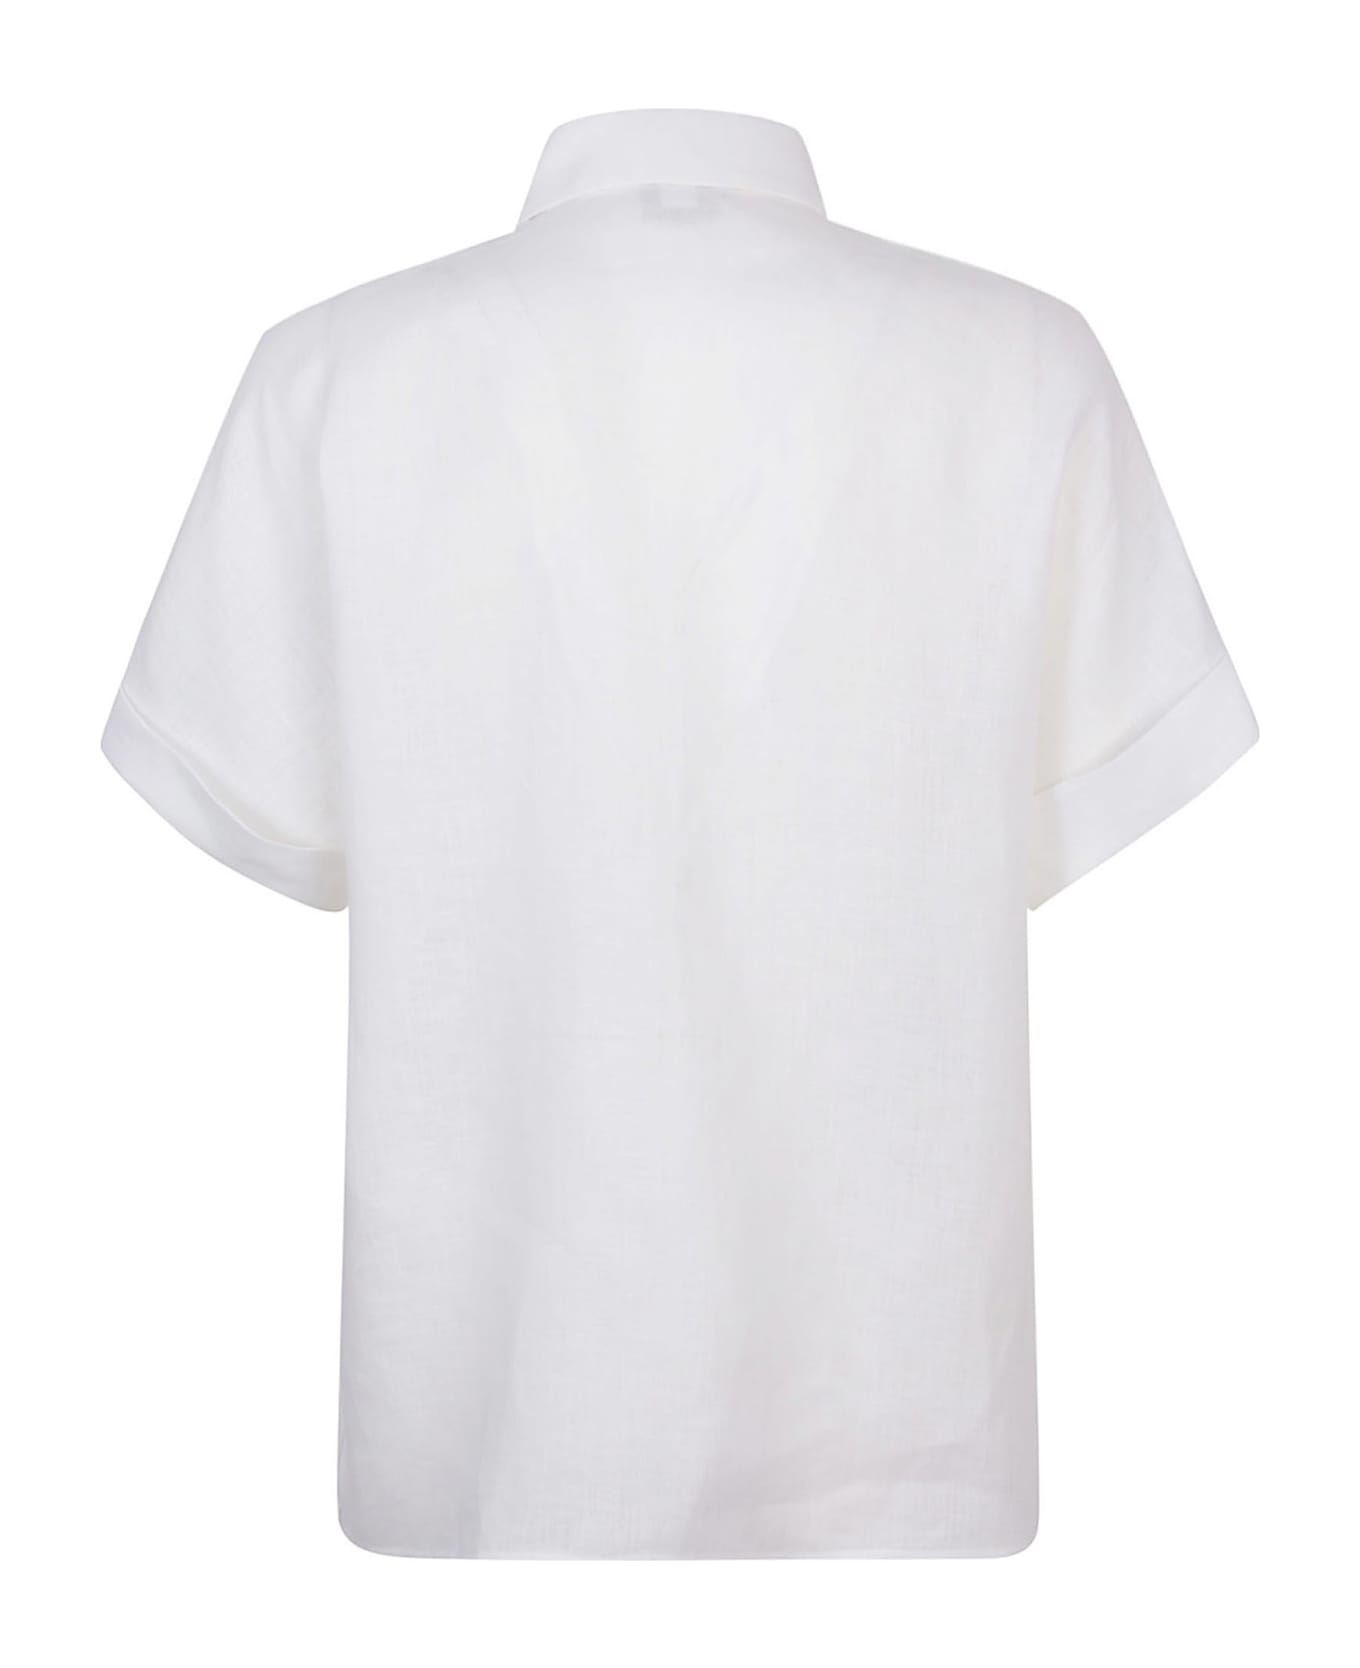 Eleventy Shirts White - White シャツ